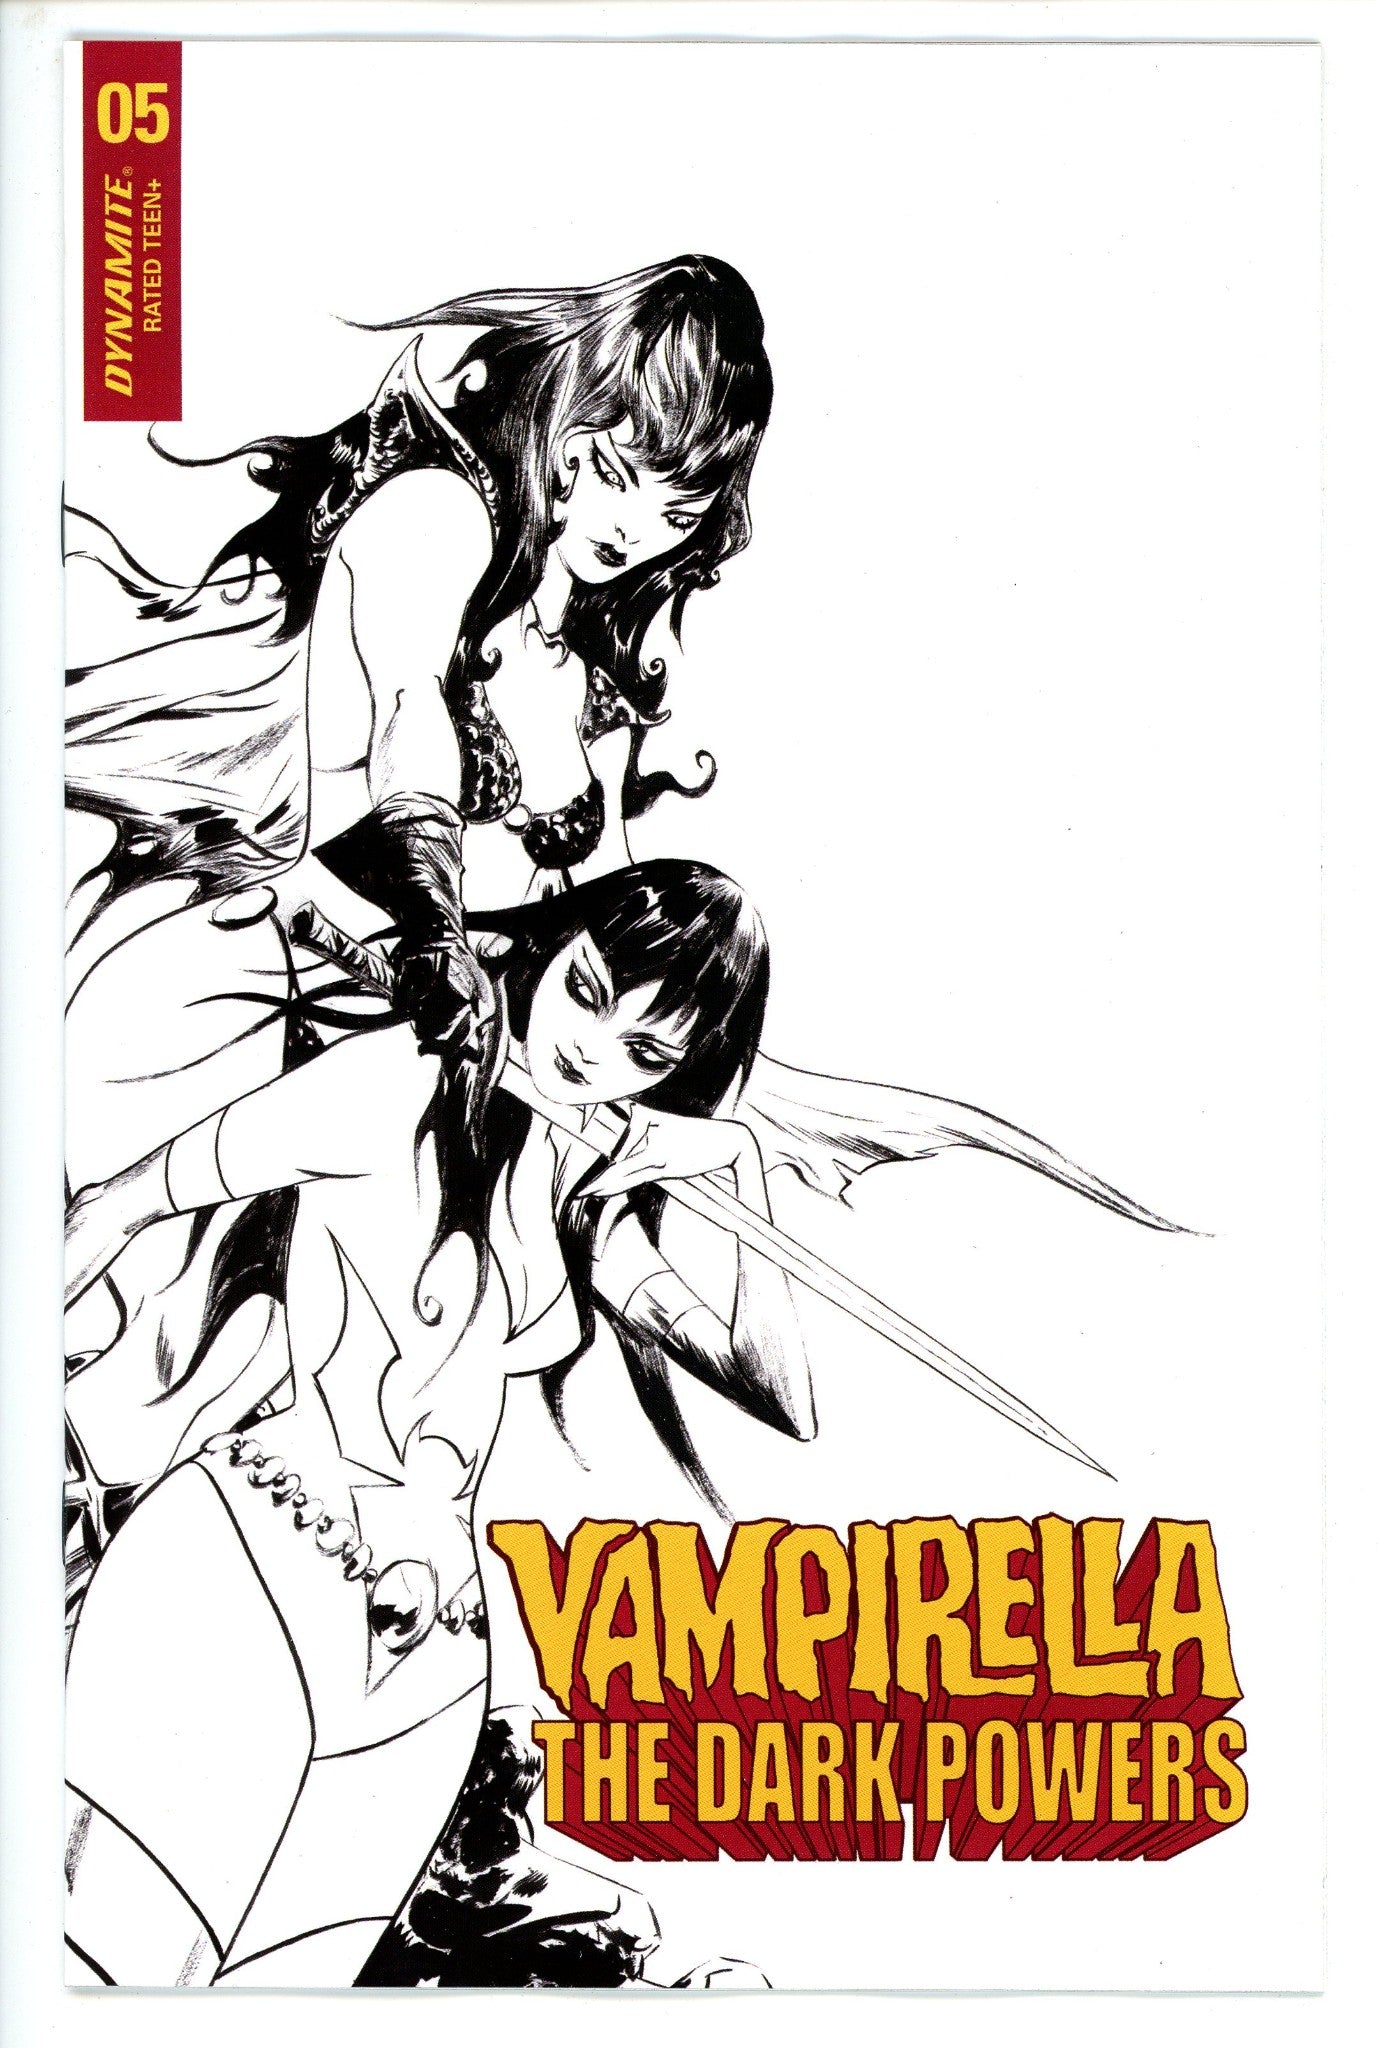 Vampirella Dark Powers 5 Lee Variant-CaptCan Comics Inc-CaptCan Comics Inc